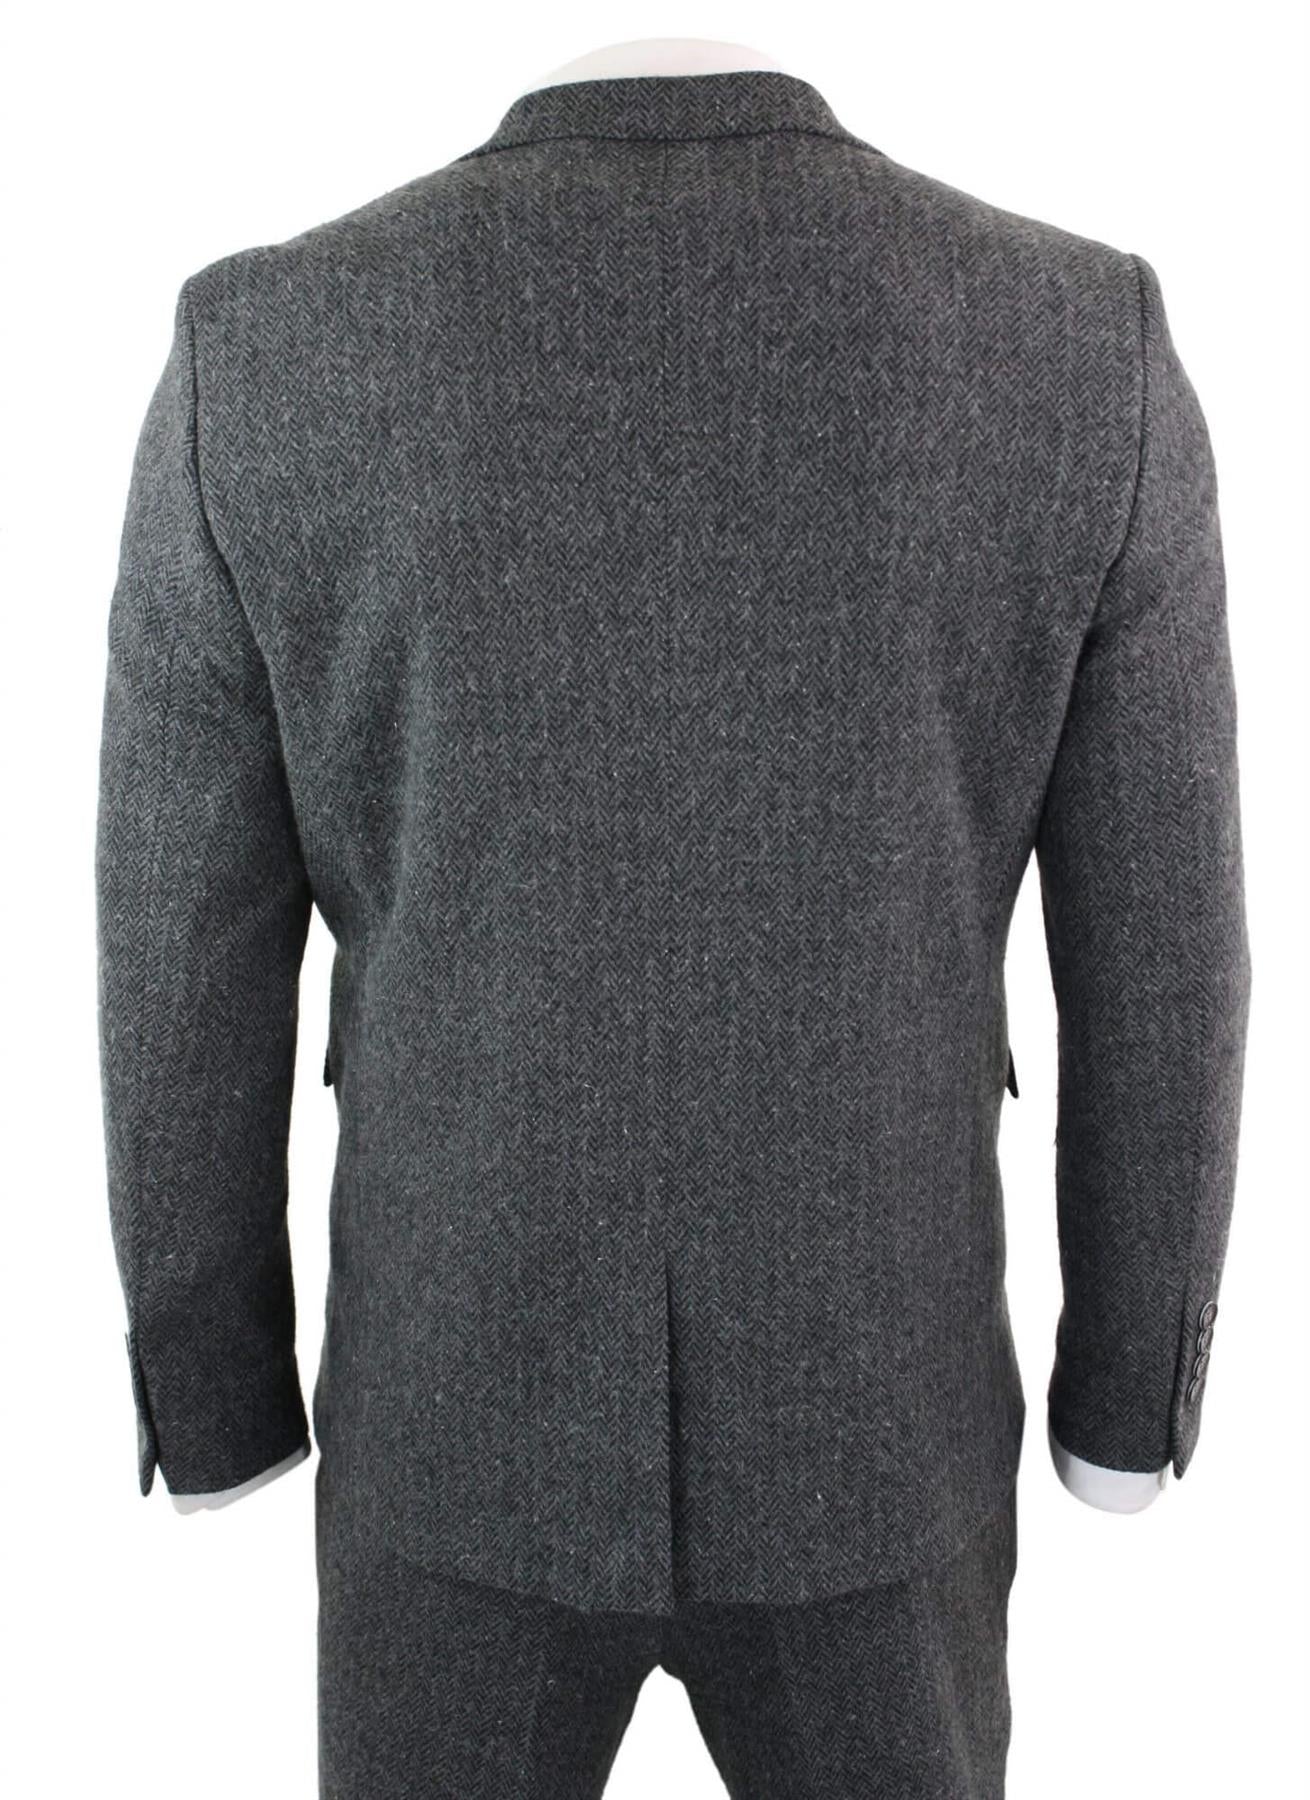 Men's 3 Piece Charcoal Grey Herringbone Tweed Suit